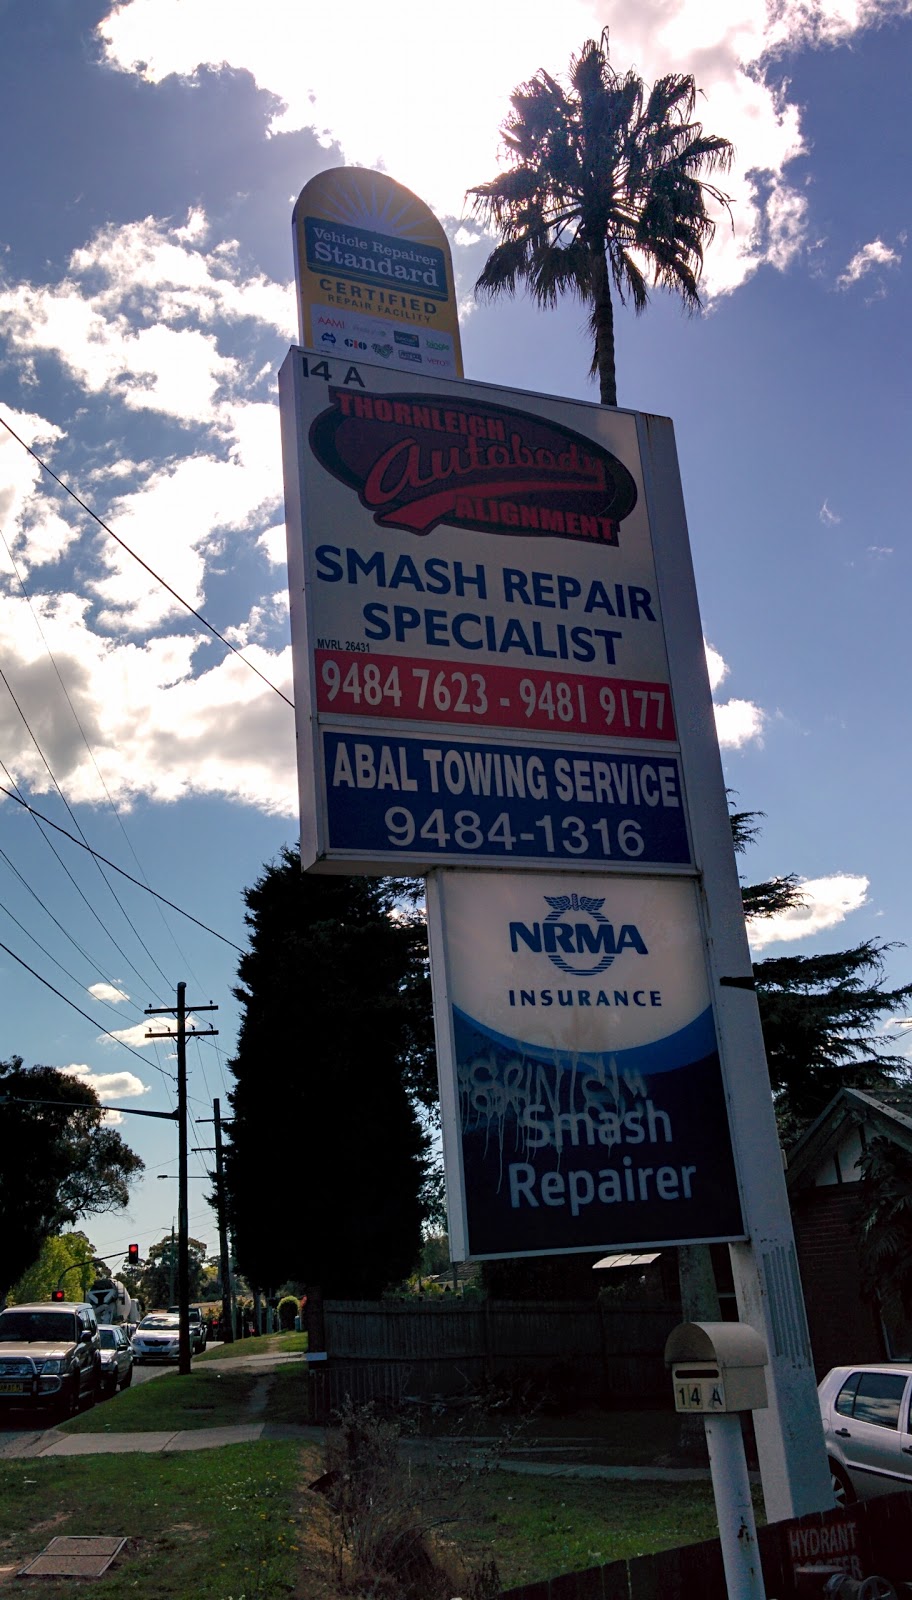 Thornleigh Auto Body Alignment | car repair | 14A Duffy Ave, Thornleigh NSW 2120, Australia | 0294847623 OR +61 2 9484 7623